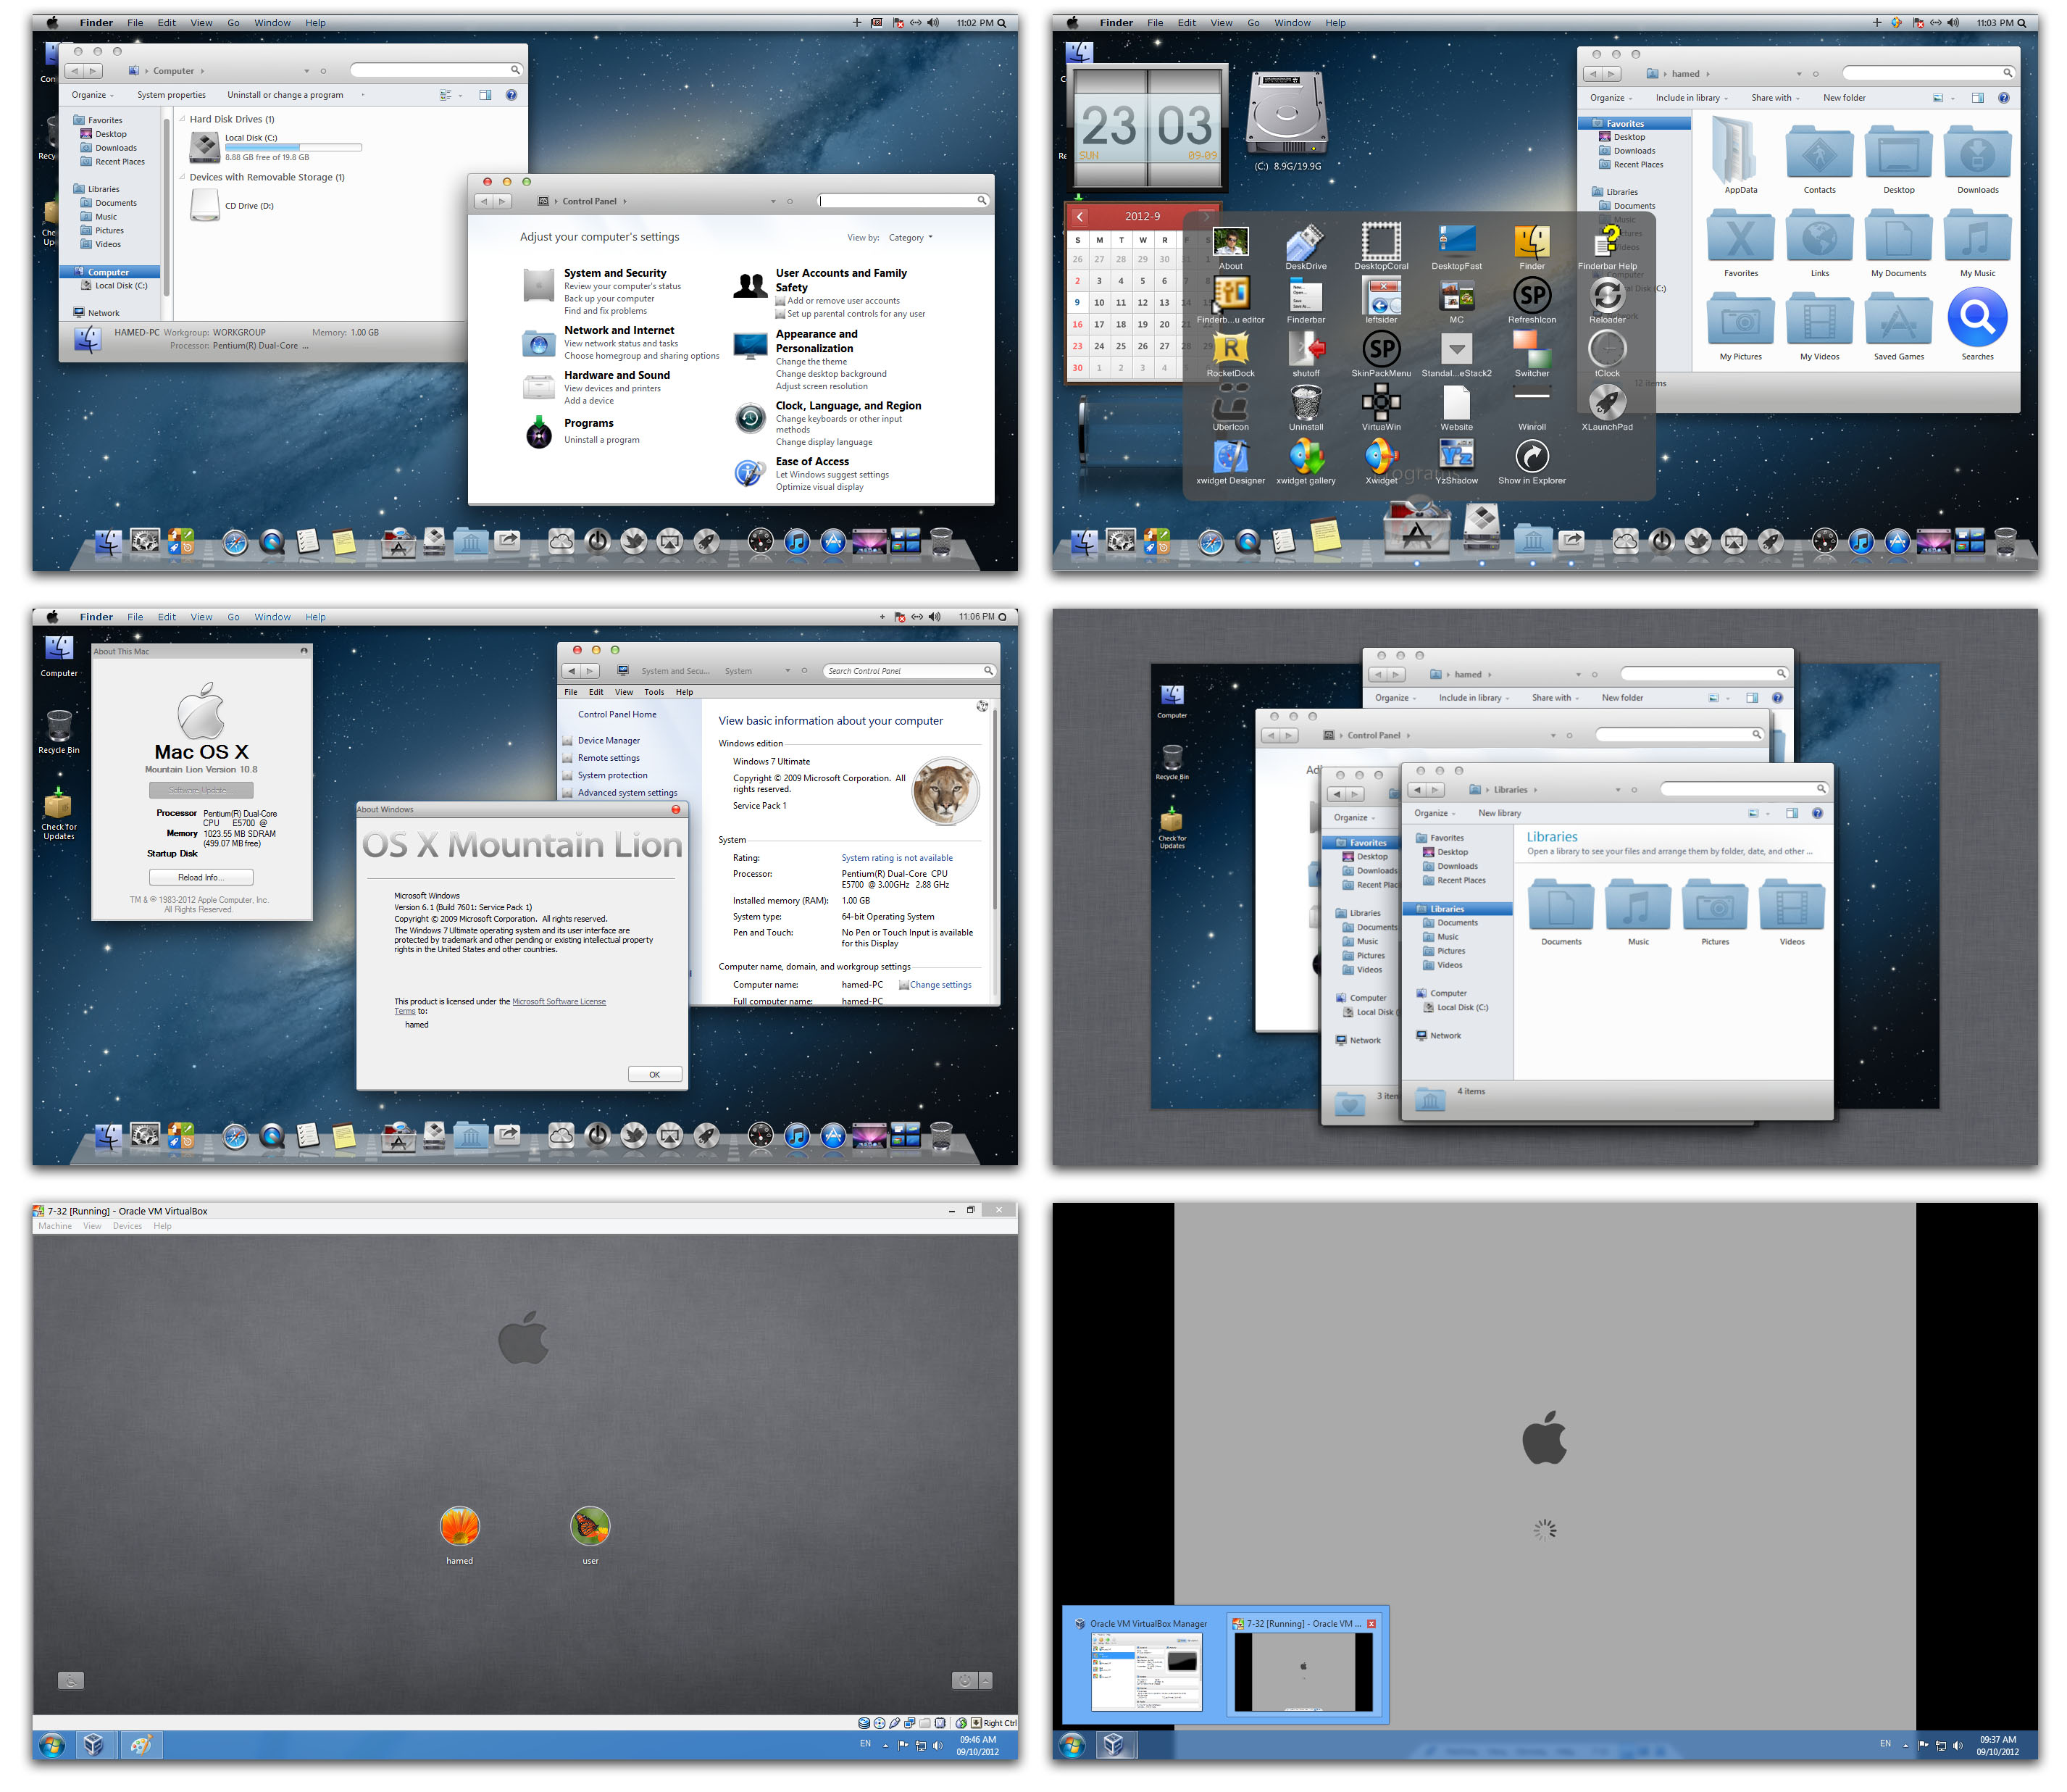 Mac Os Skin For Windows 7 Free Download